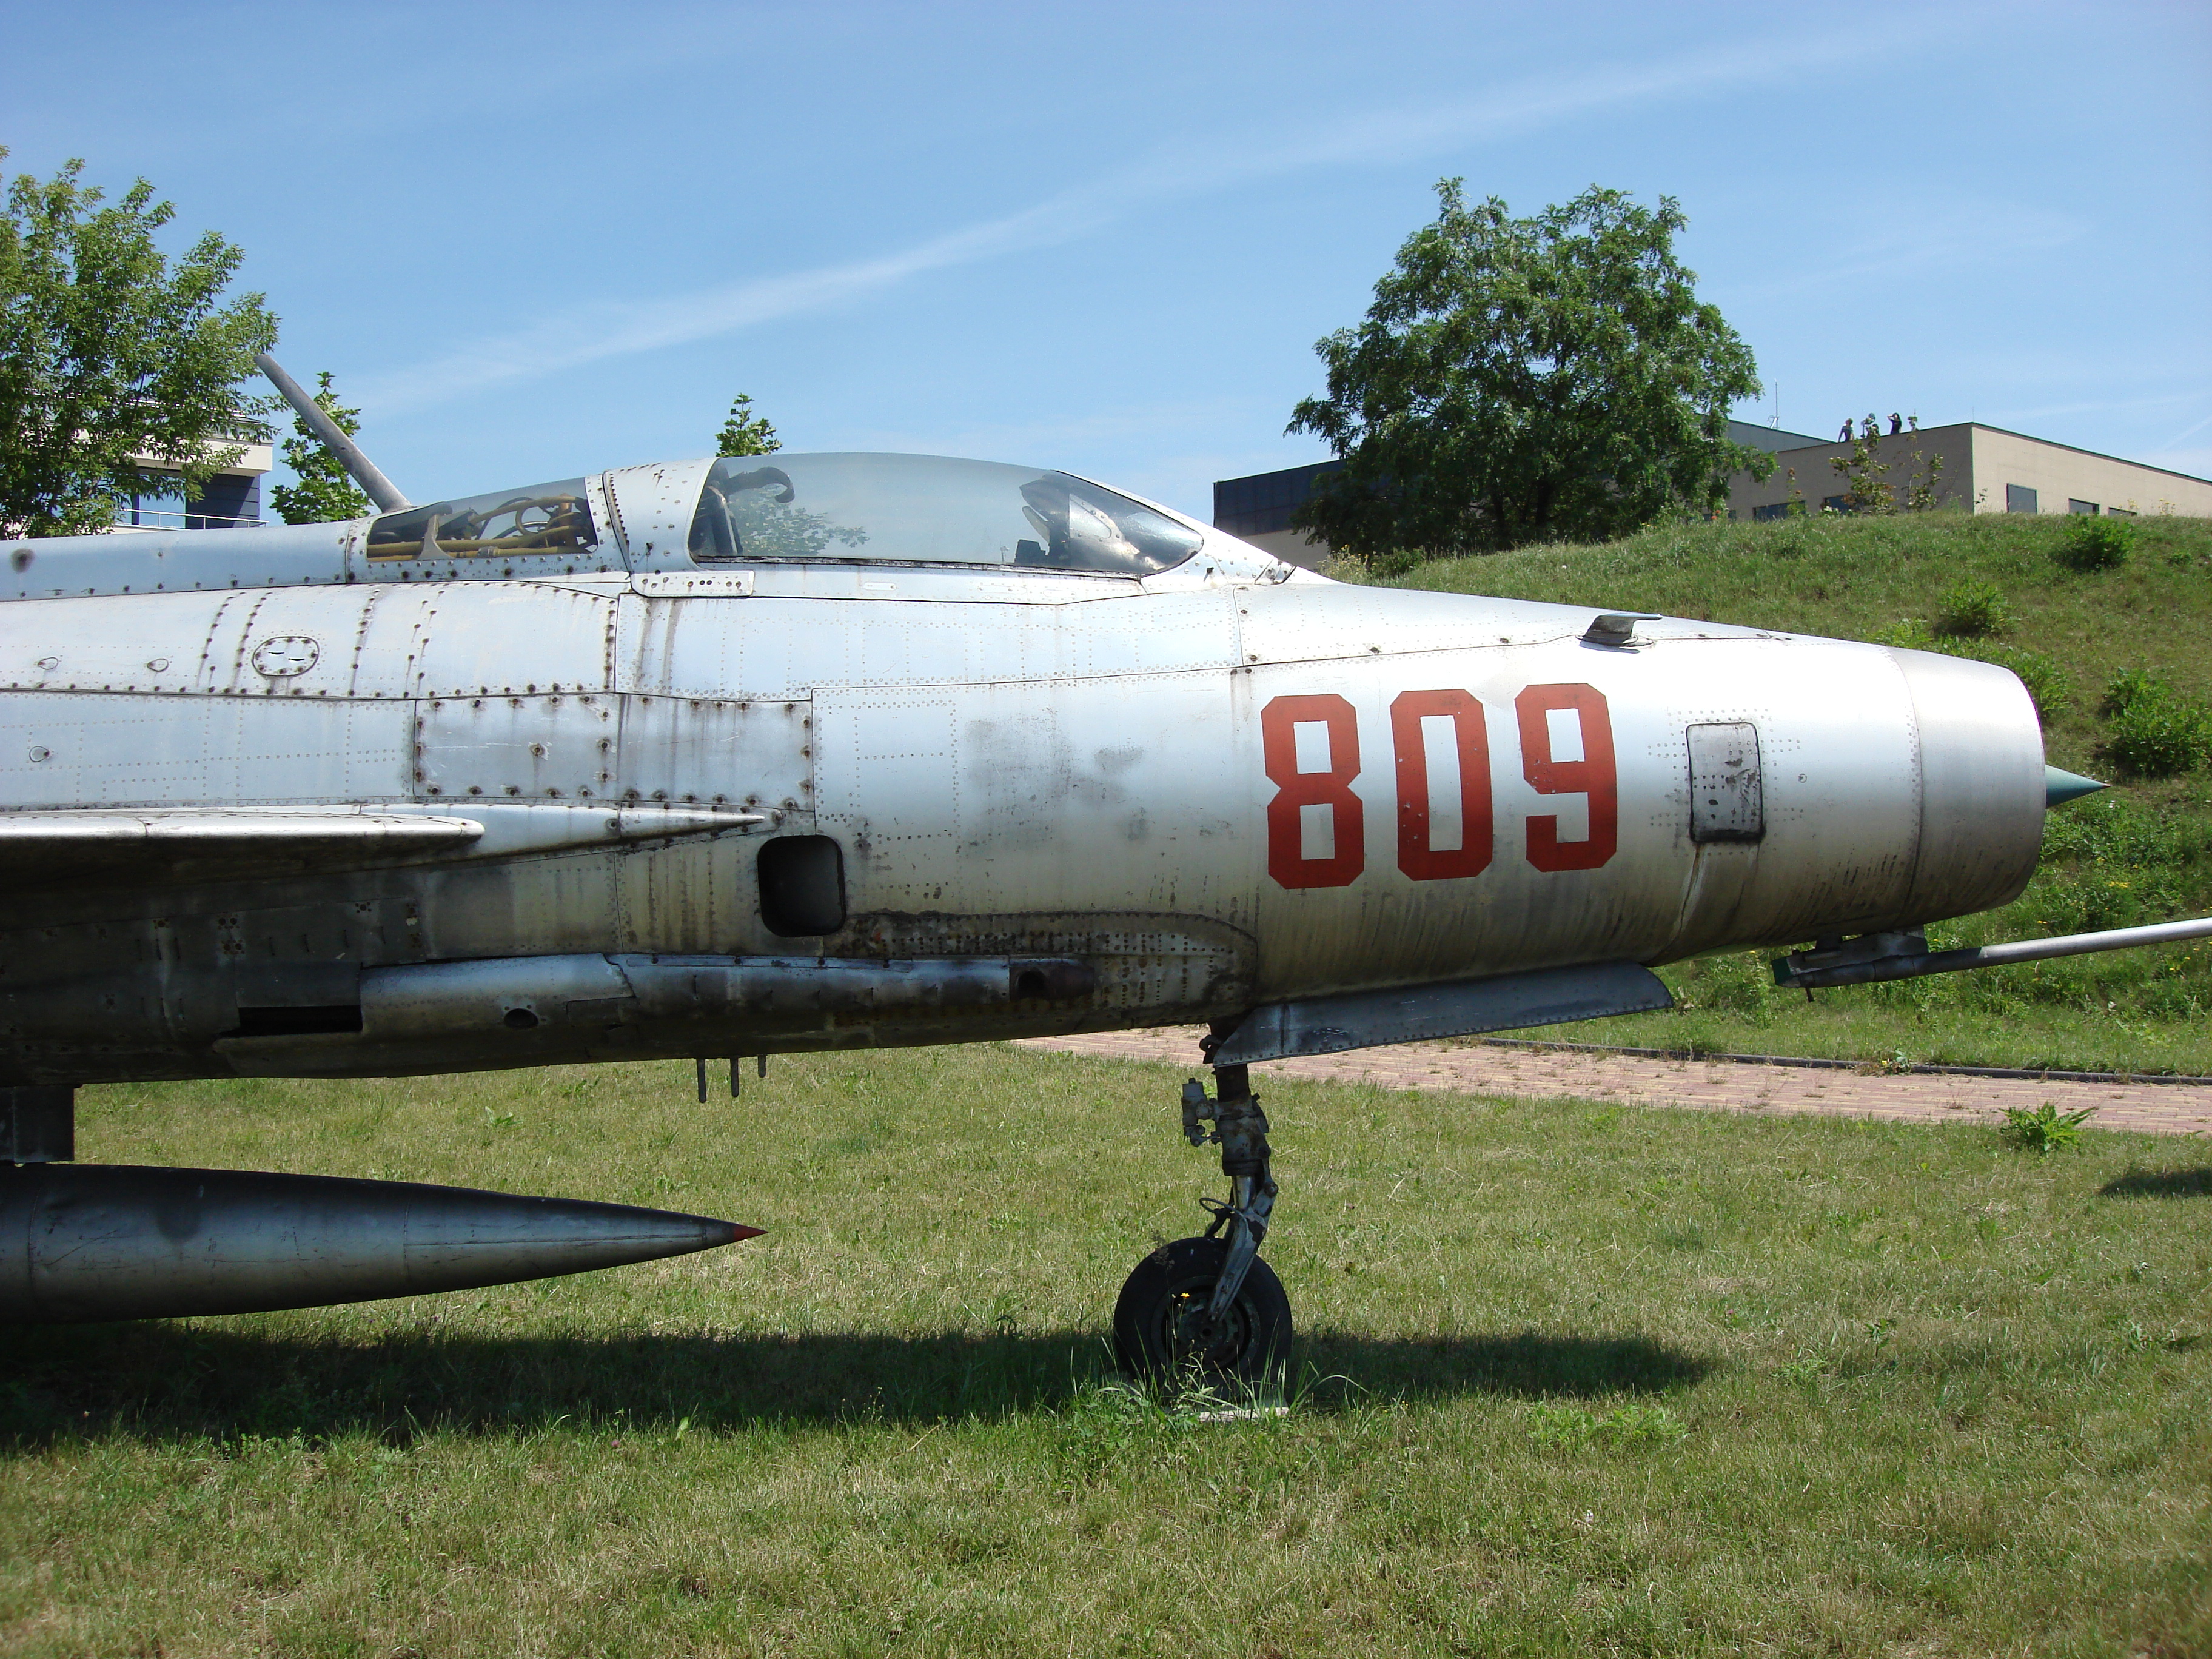 Przednia część kadłuba MiG-21 F-13 nb 809. Czyżyny 2007 rok. Zdjęcie Karol Placha Hetman